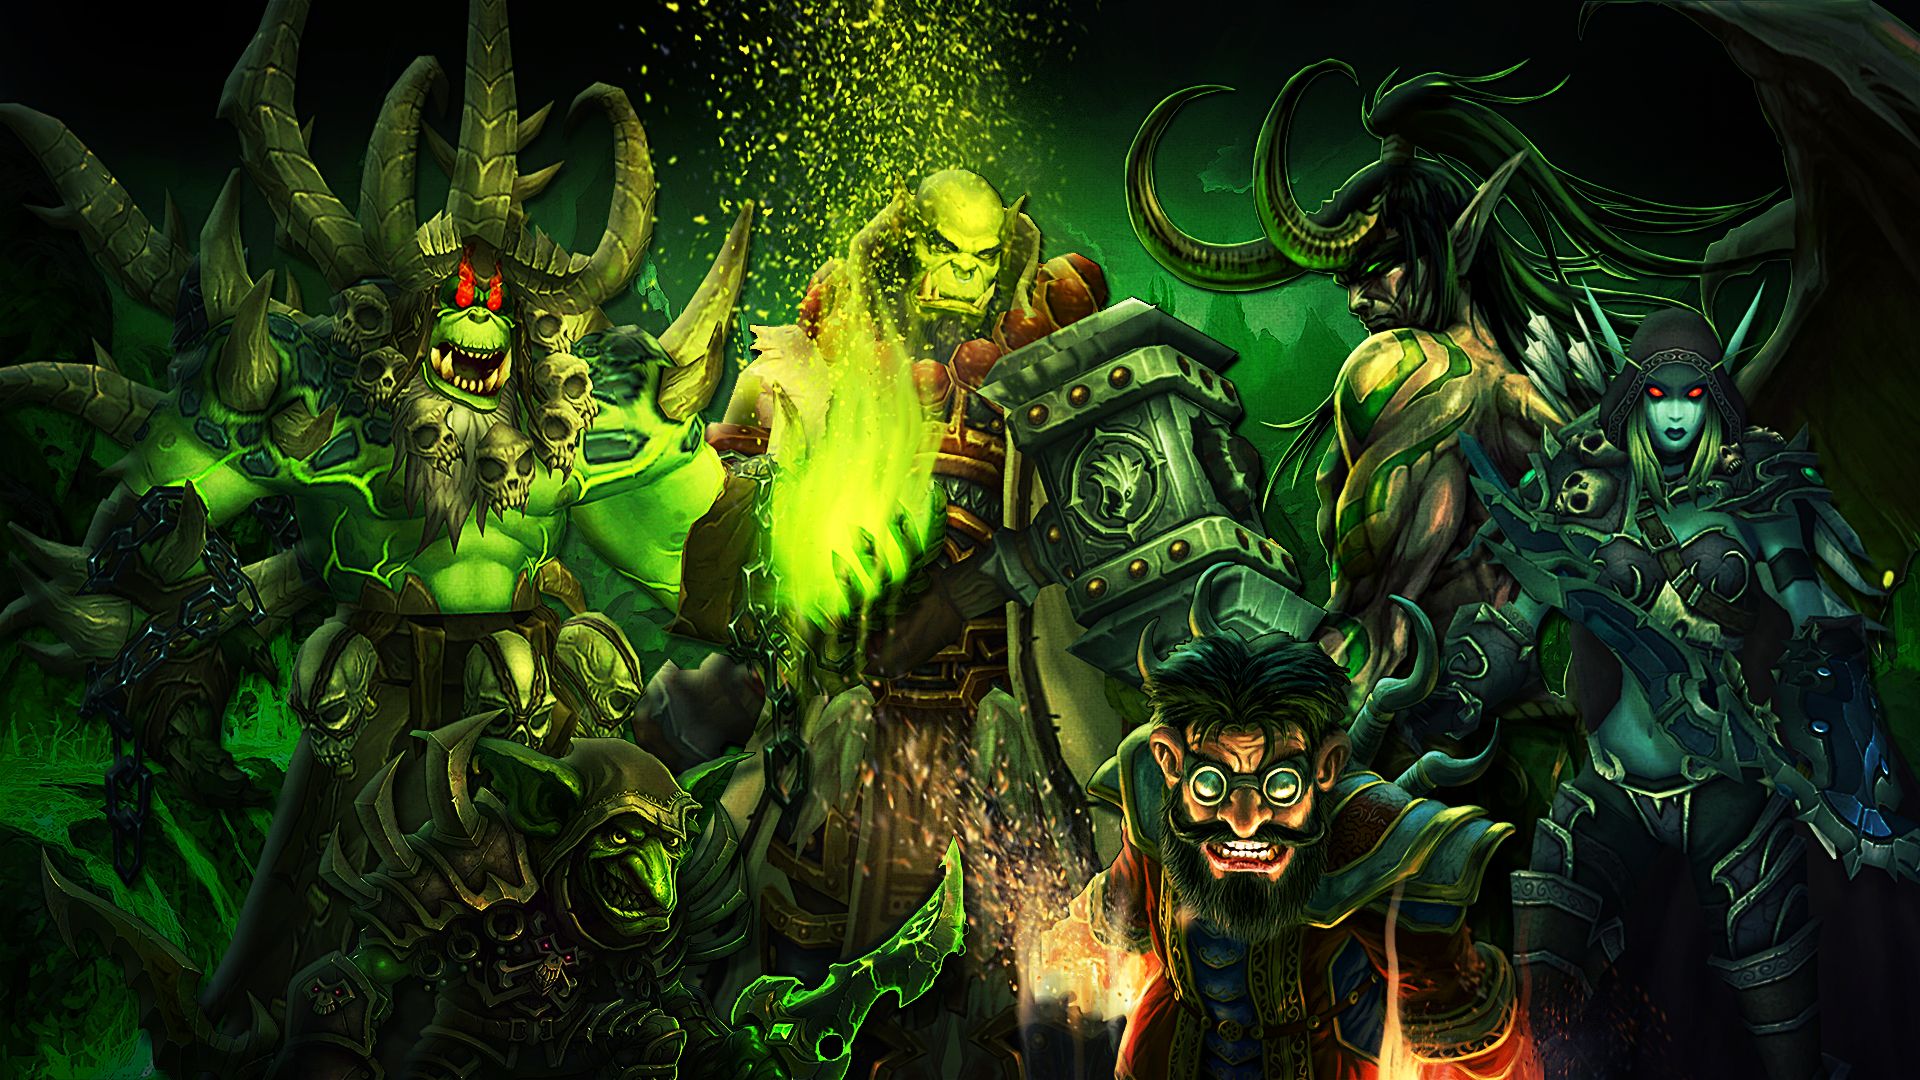 Скачать обои Мир Warcraft: Легион на телефон бесплатно